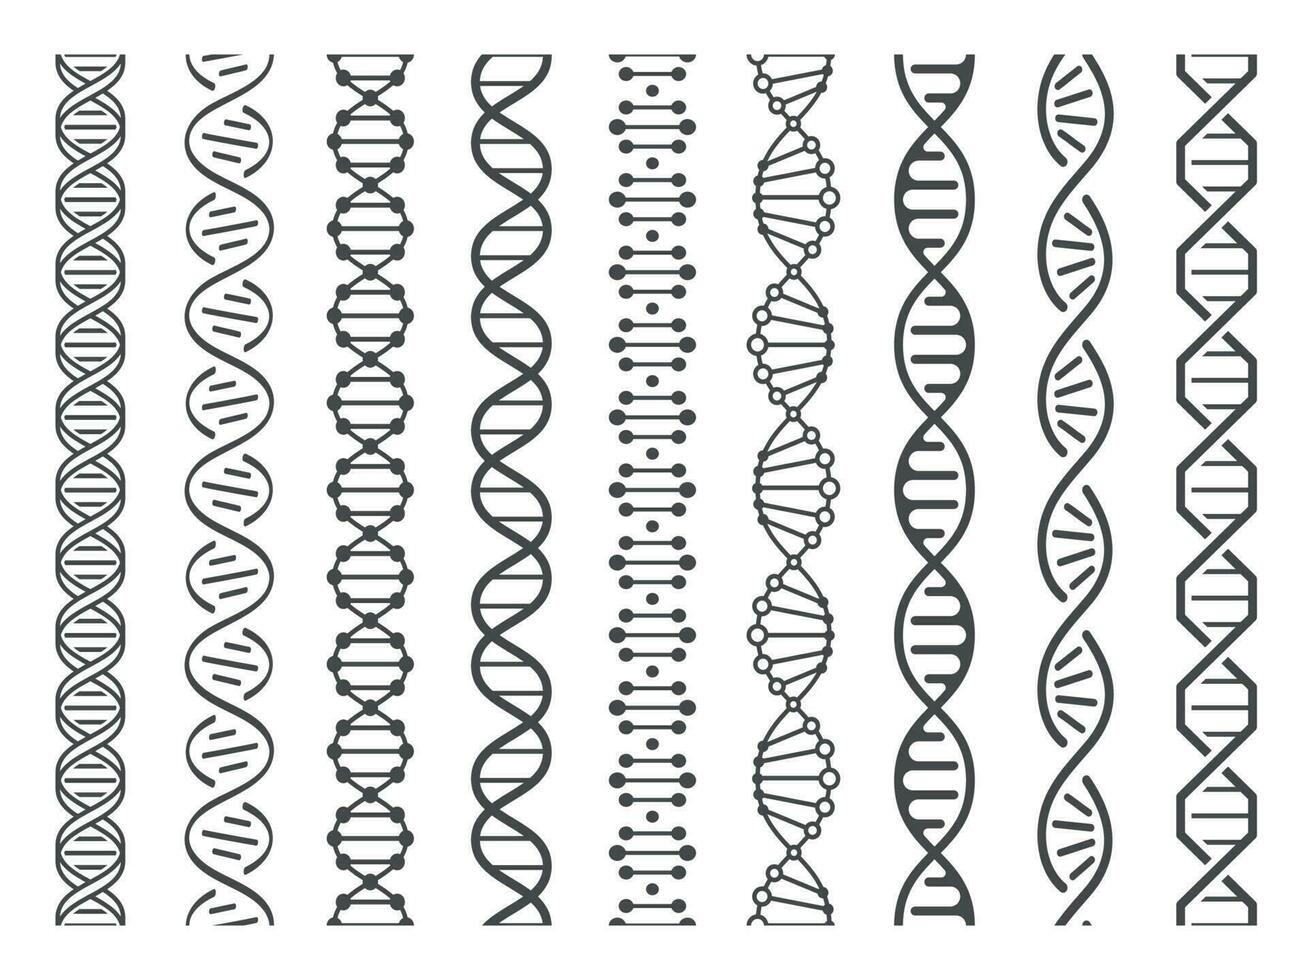 desatado dna espiral. adn hélice estrutura, genômico modelo e humano genética código padronizar vetor ilustração conjunto